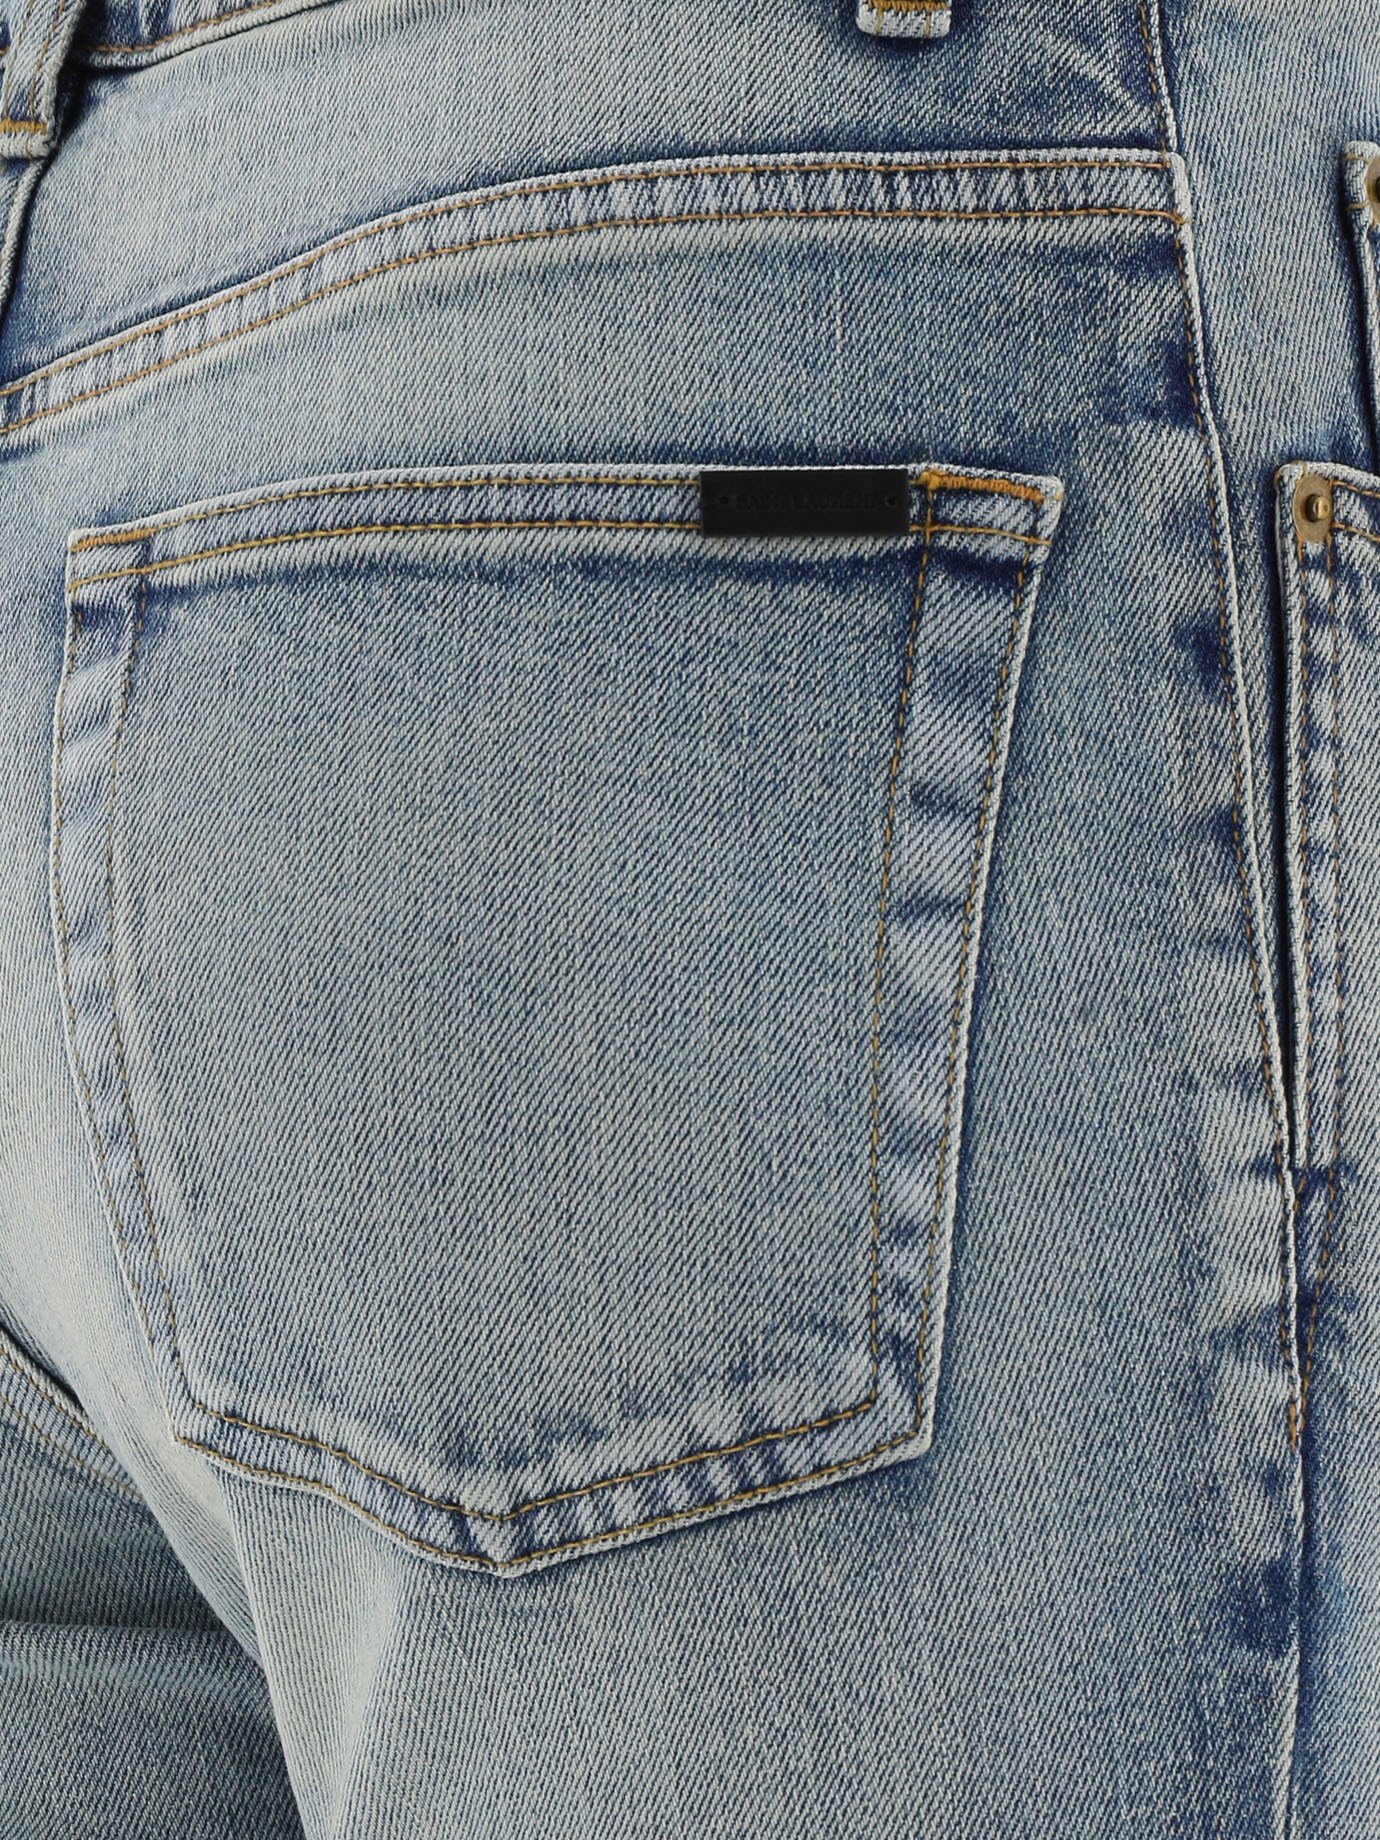 Jeans slavati by Saint Laurent